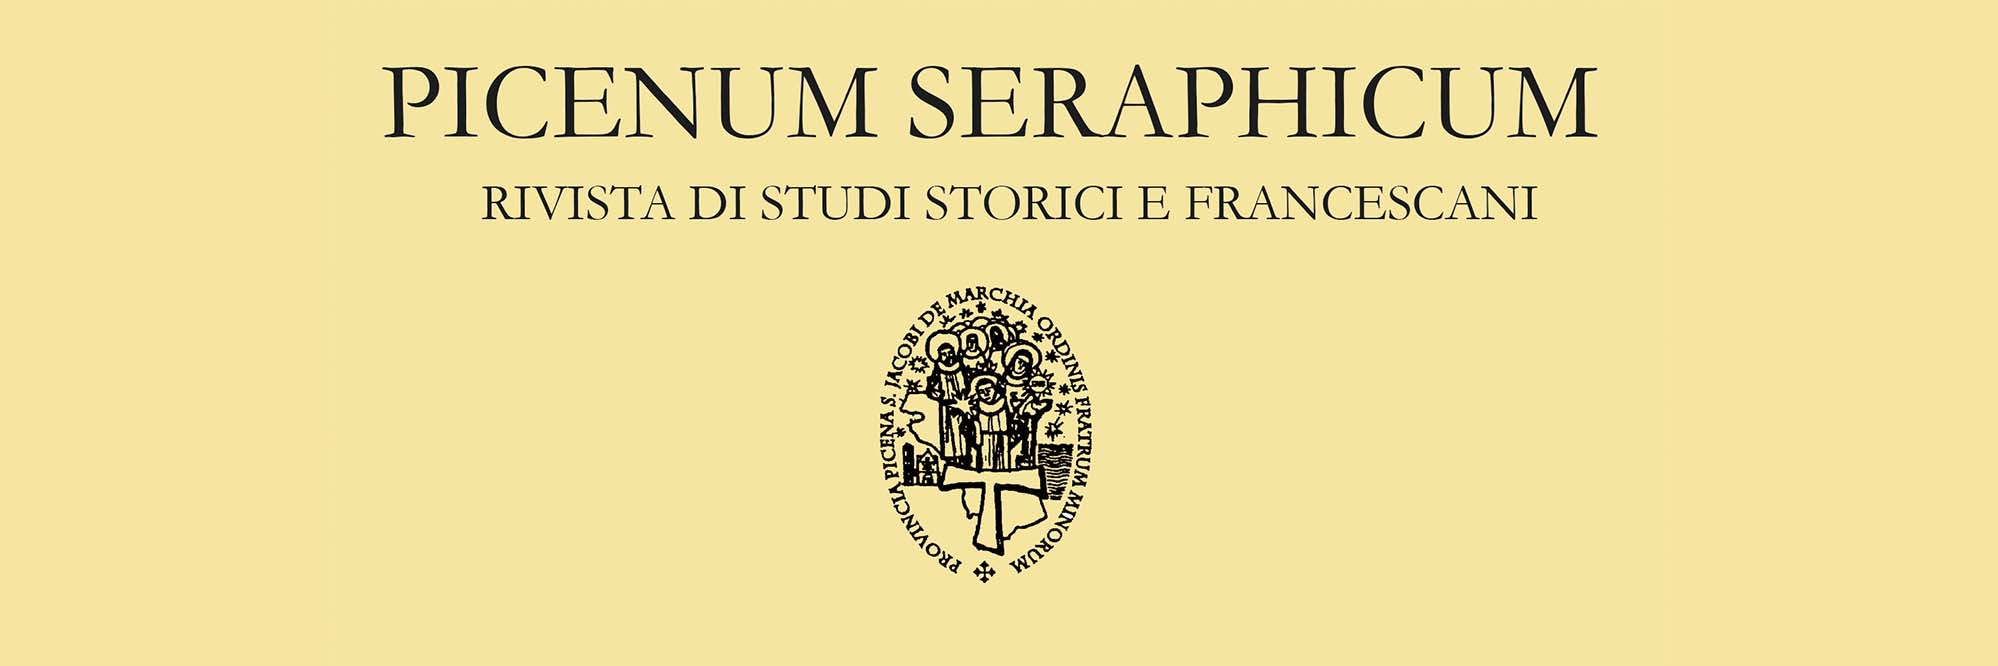 Picenum Seraphicum